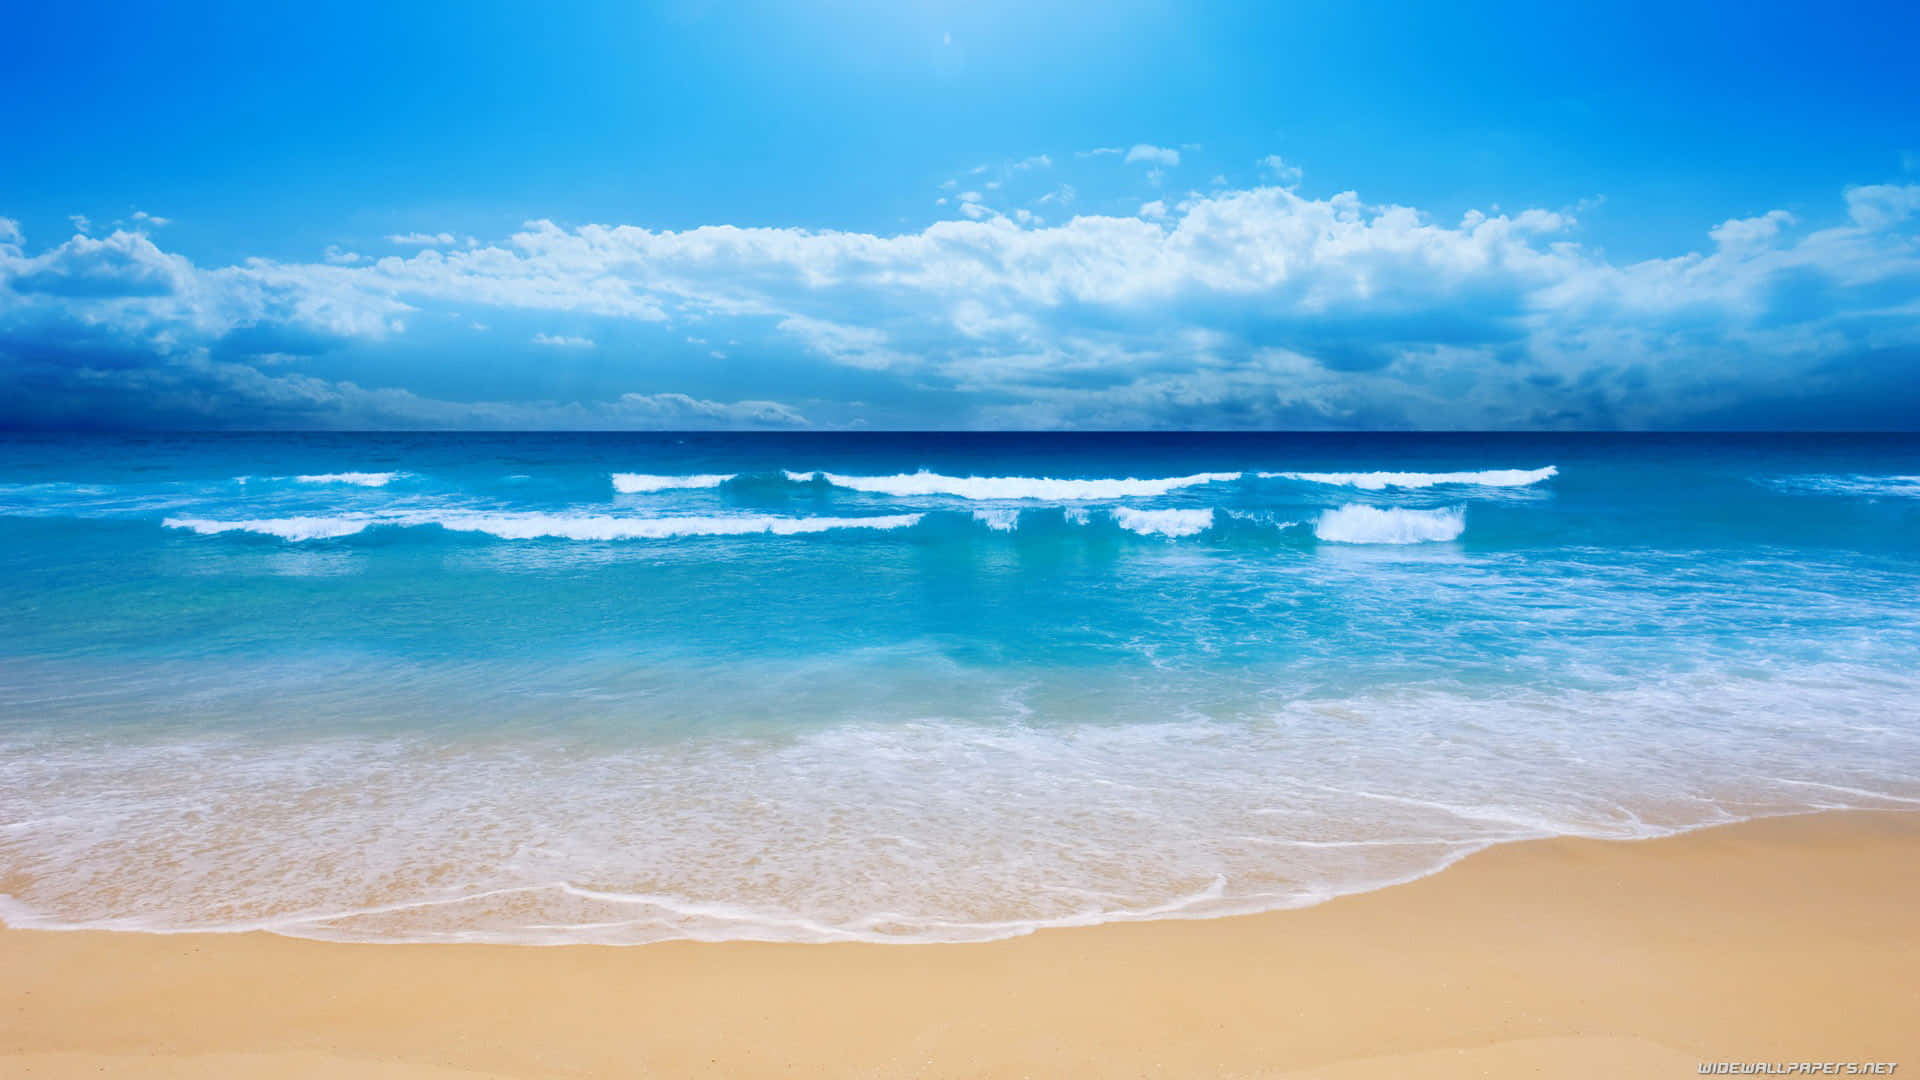 Bãi biển xanh, nơi tiên quyền ban sự yên bình và cảm giác thoải mái trong lòng bạn. Hình ảnh này sẽ truyền tải tới bạn cảm giác mát mẻ màu xanh ngát của biển khiến bạn muốn đắm chìm vào cảnh đẹp này đến bao giờ. 